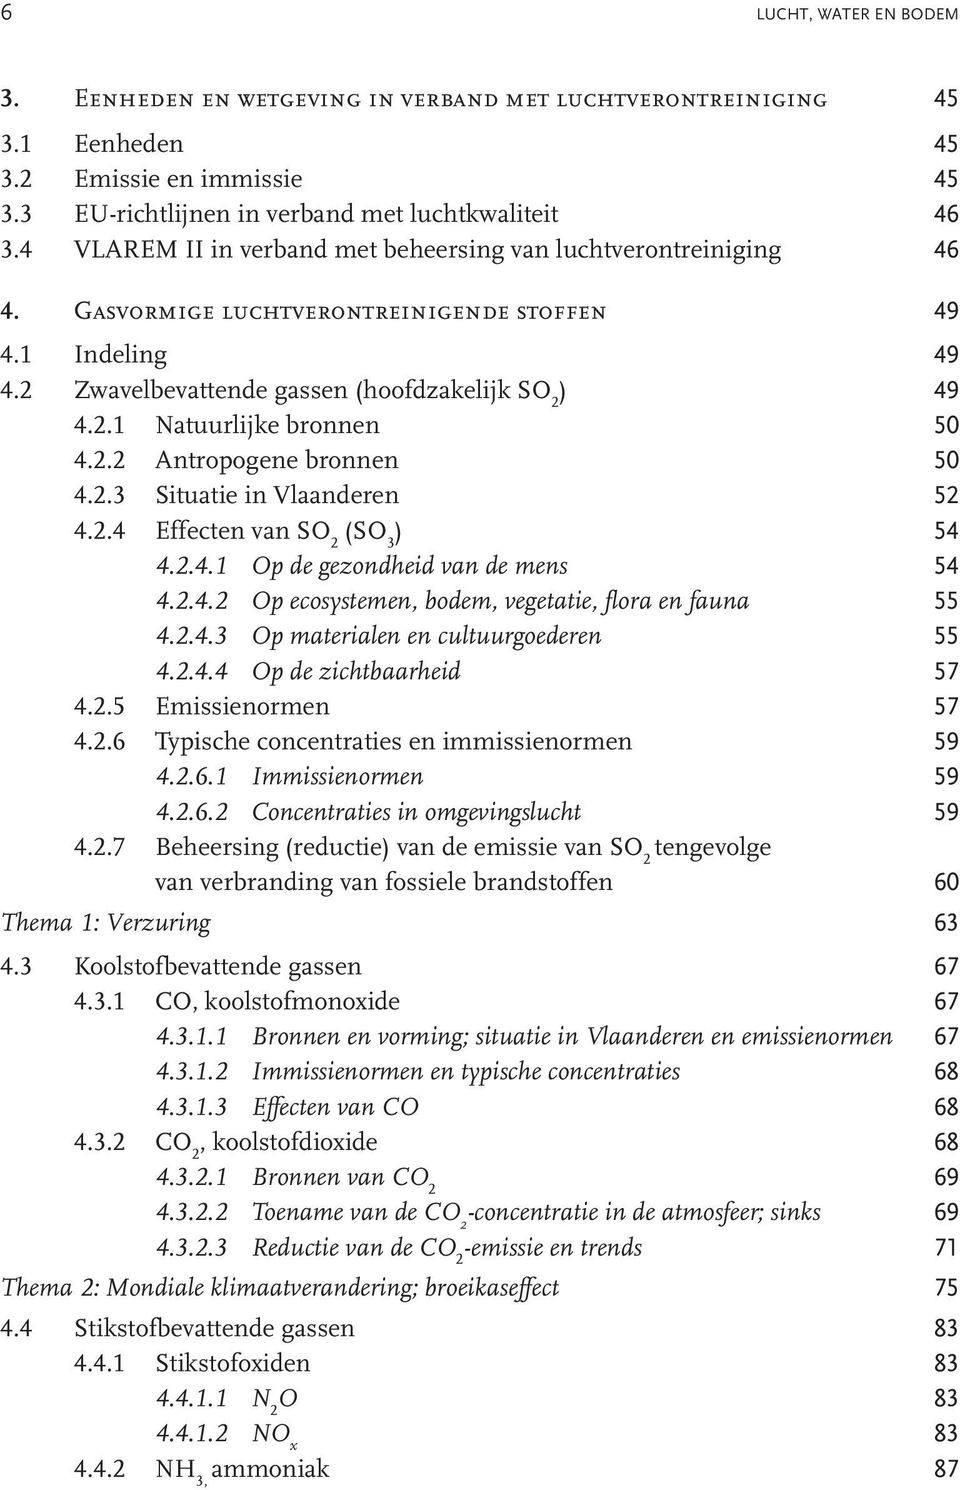 2.2 Antropogene bronnen 50 4.2.3 Situatie in Vlaanderen 52 4.2.4 Effecten van SO 2 (SO 3 ) 54 4.2.4.1 Op de gezondheid van de mens 54 4.2.4.2 Op ecosystemen, bodem, vegetatie, flora en fauna 55 4.2.4.3 Op materialen en cultuurgoederen 55 4.